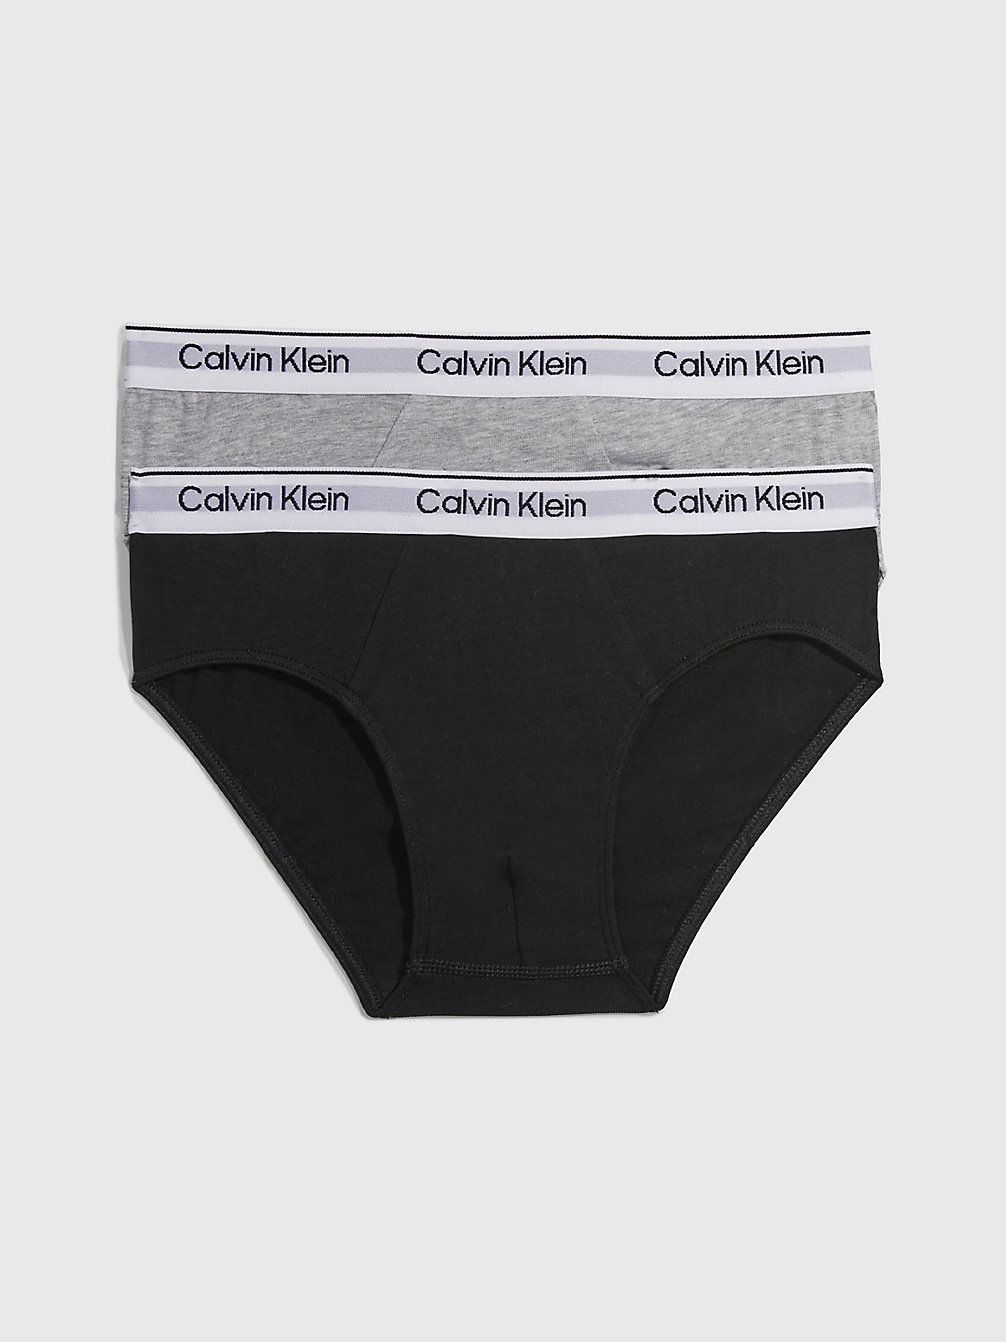 GREYHEATHER/PVHBLACK 2 Pack Boys Briefs - Modern Cotton undefined boys Calvin Klein